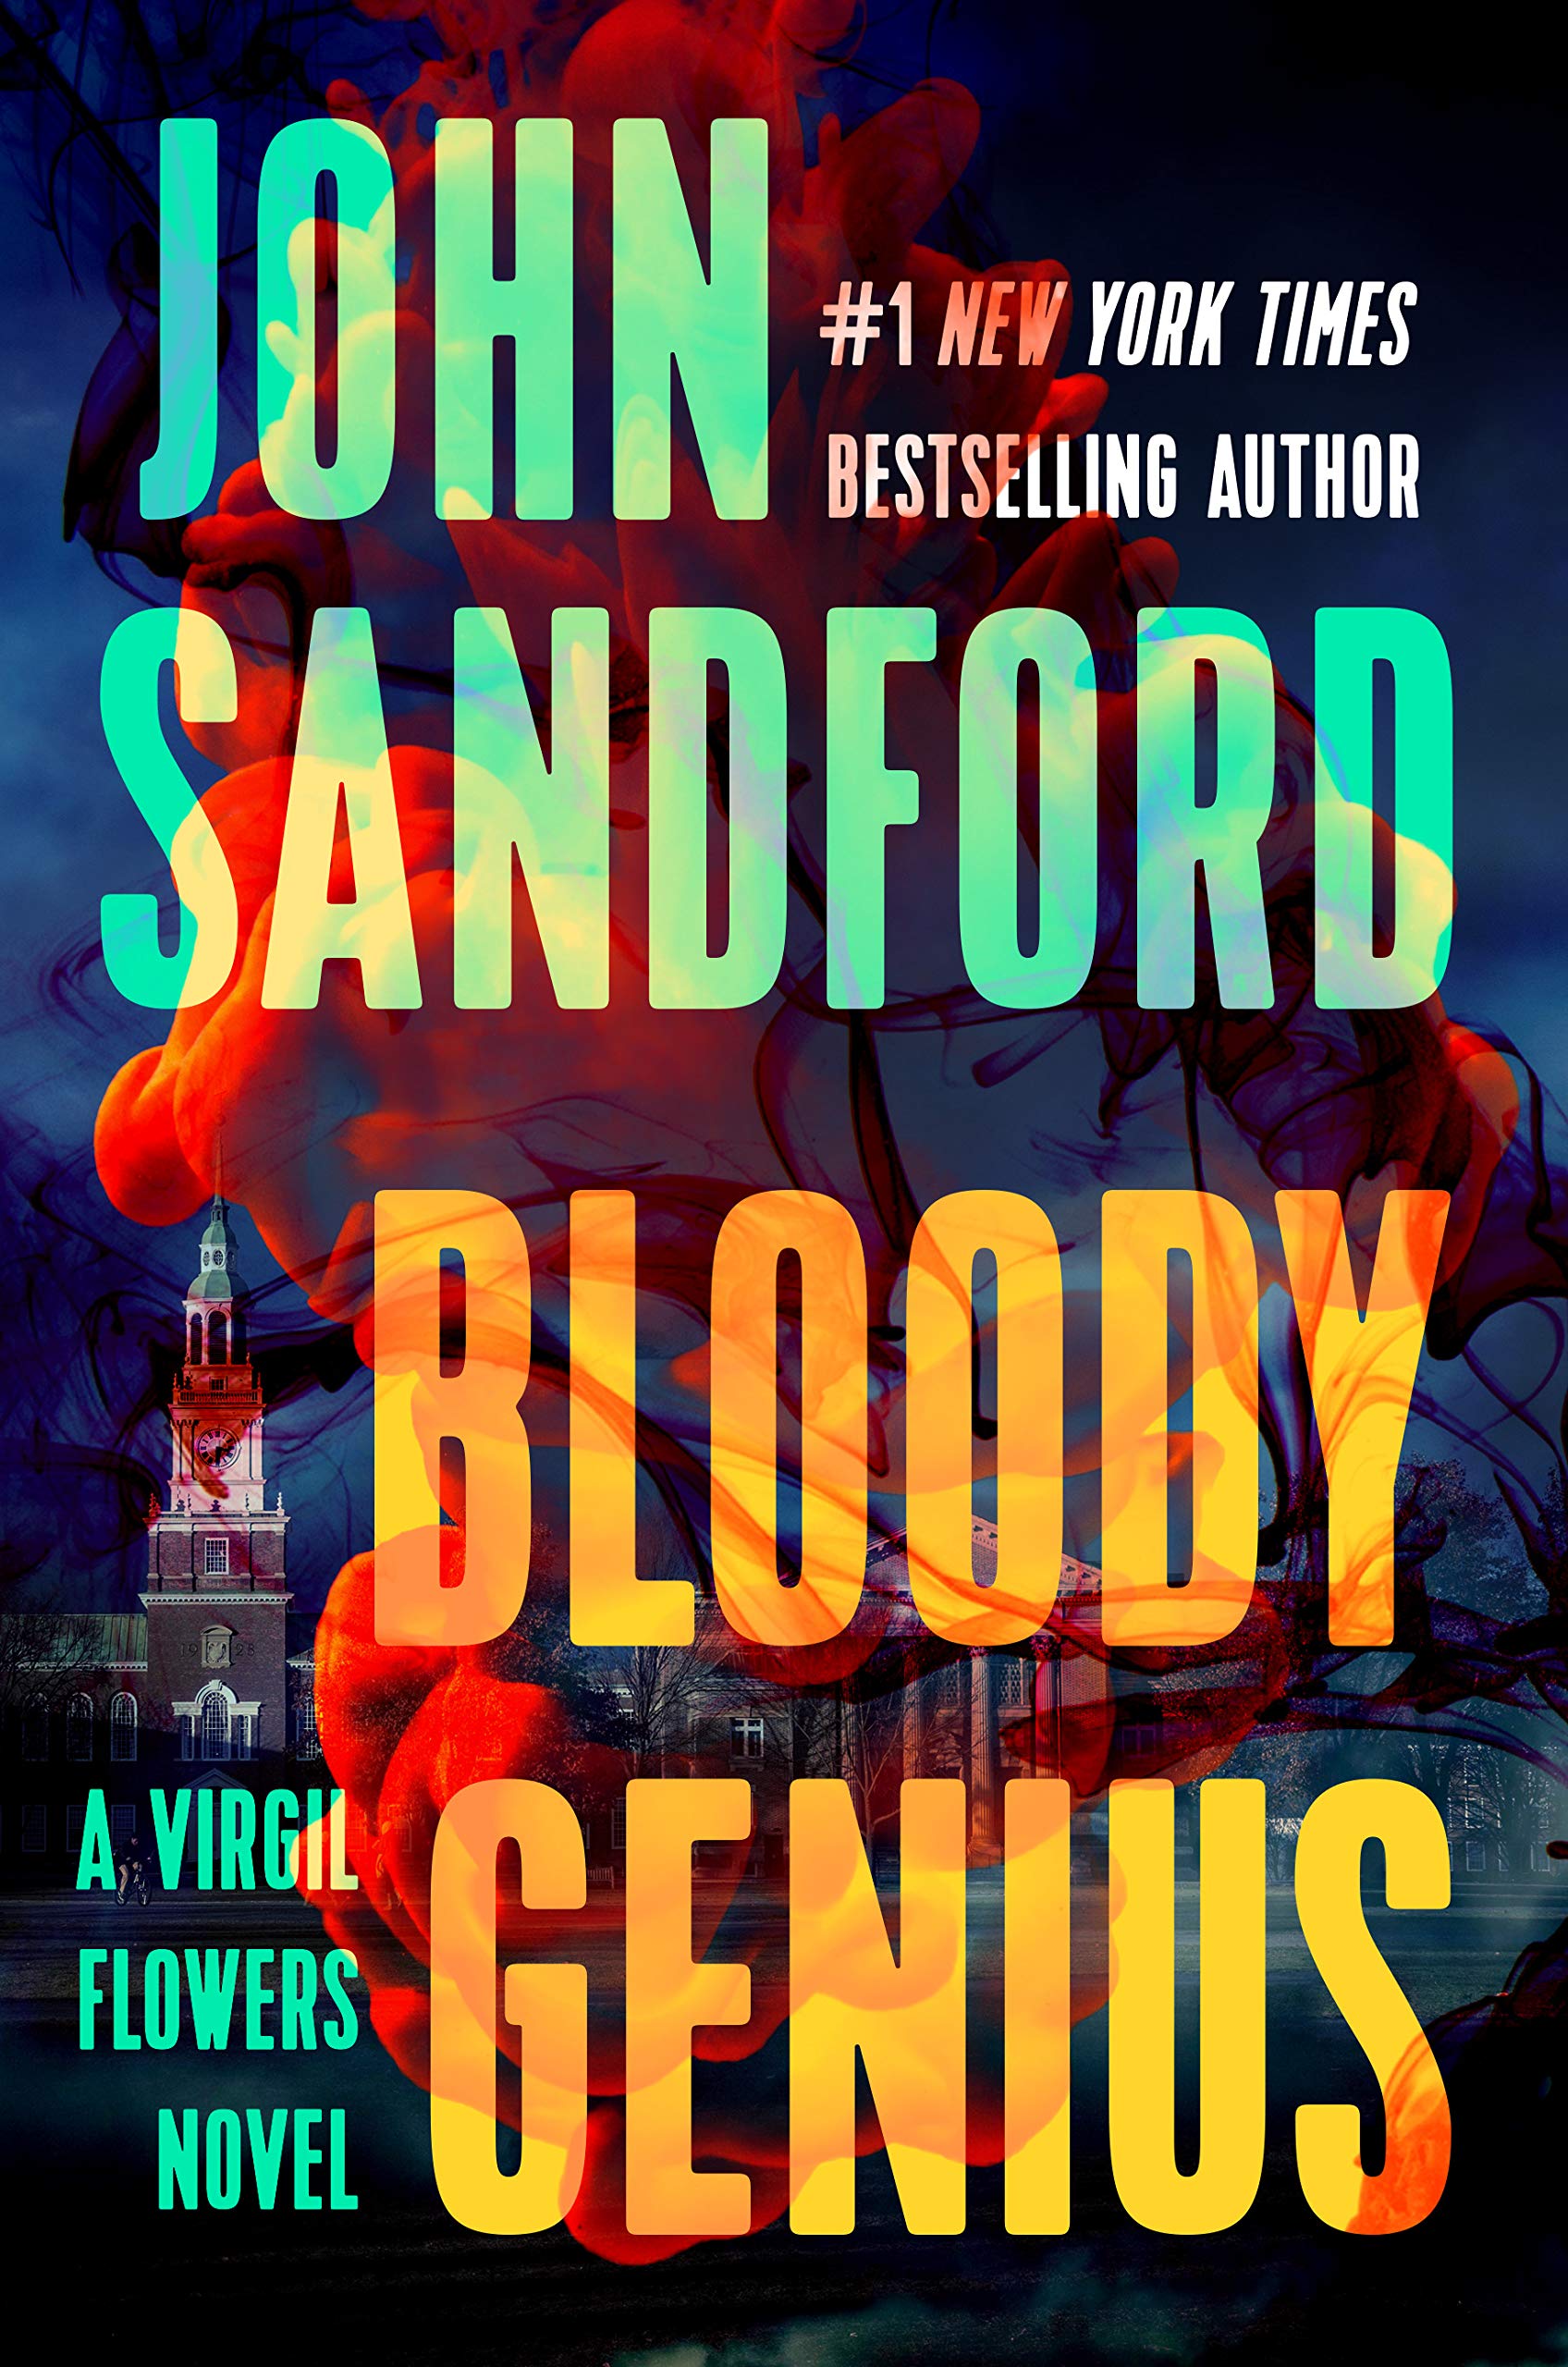 Apple Books Bestsellers John Sanford Is 1